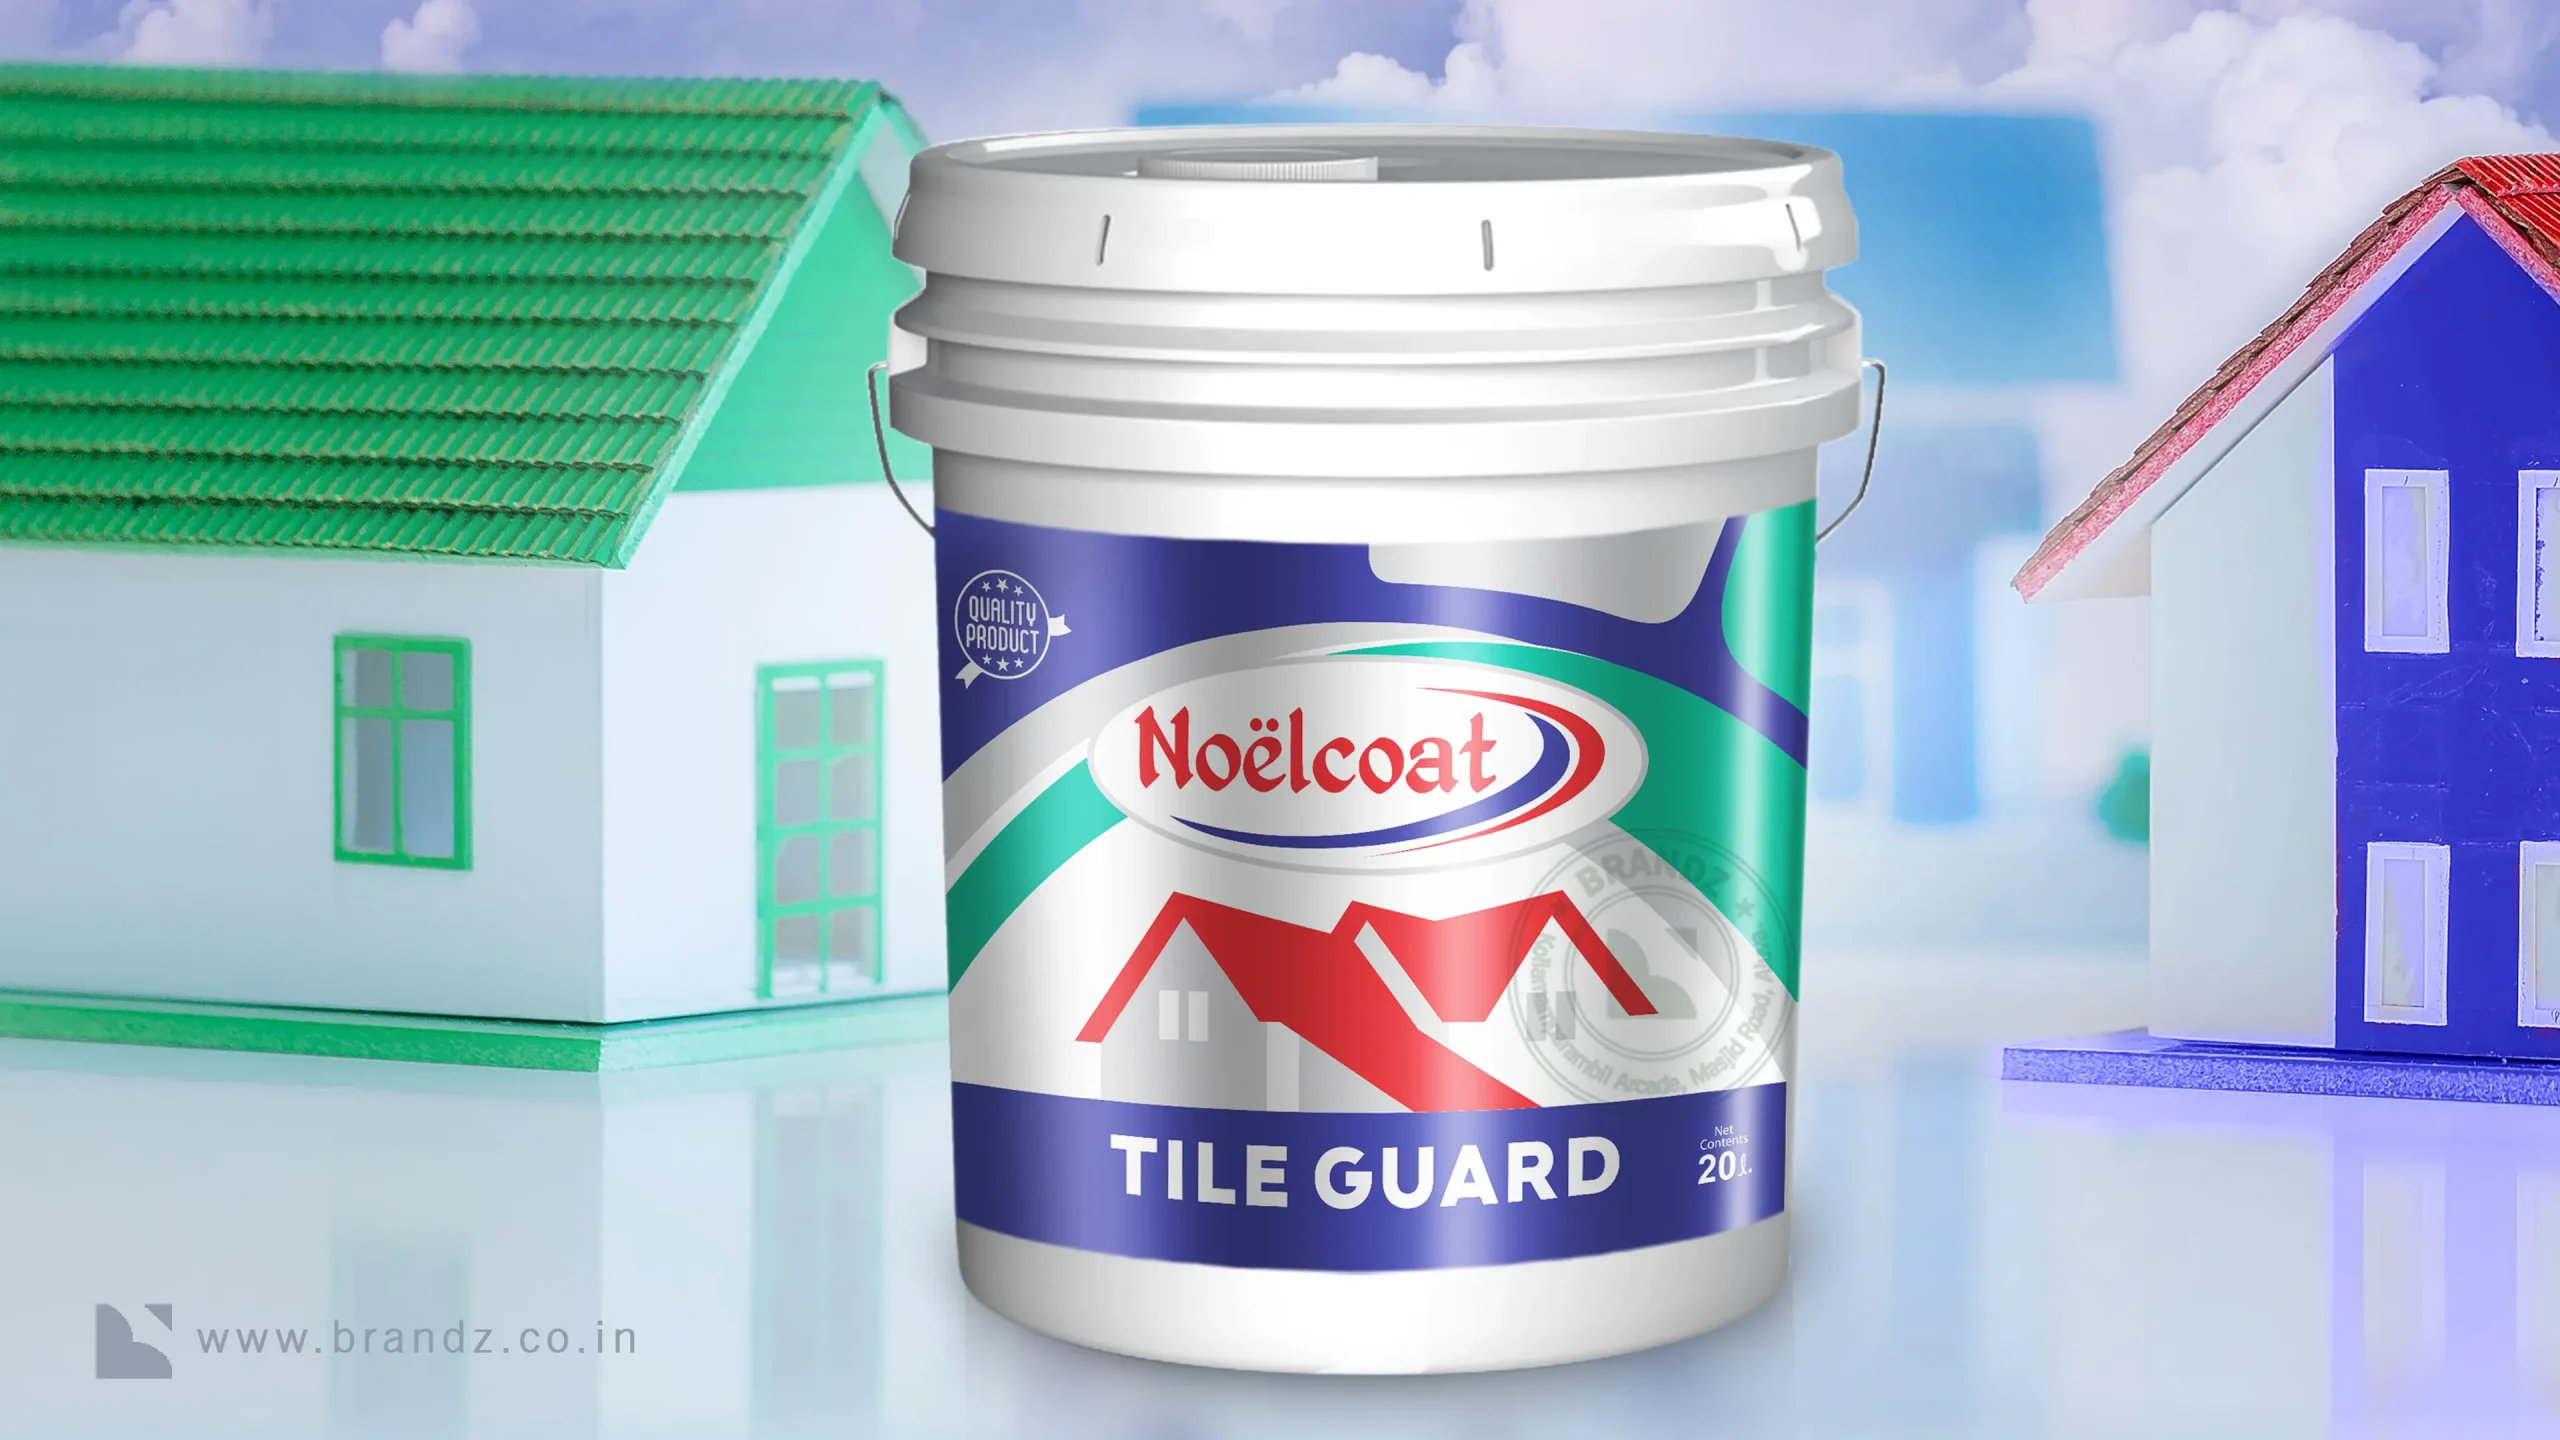 Noelcaot Tile Guard Label